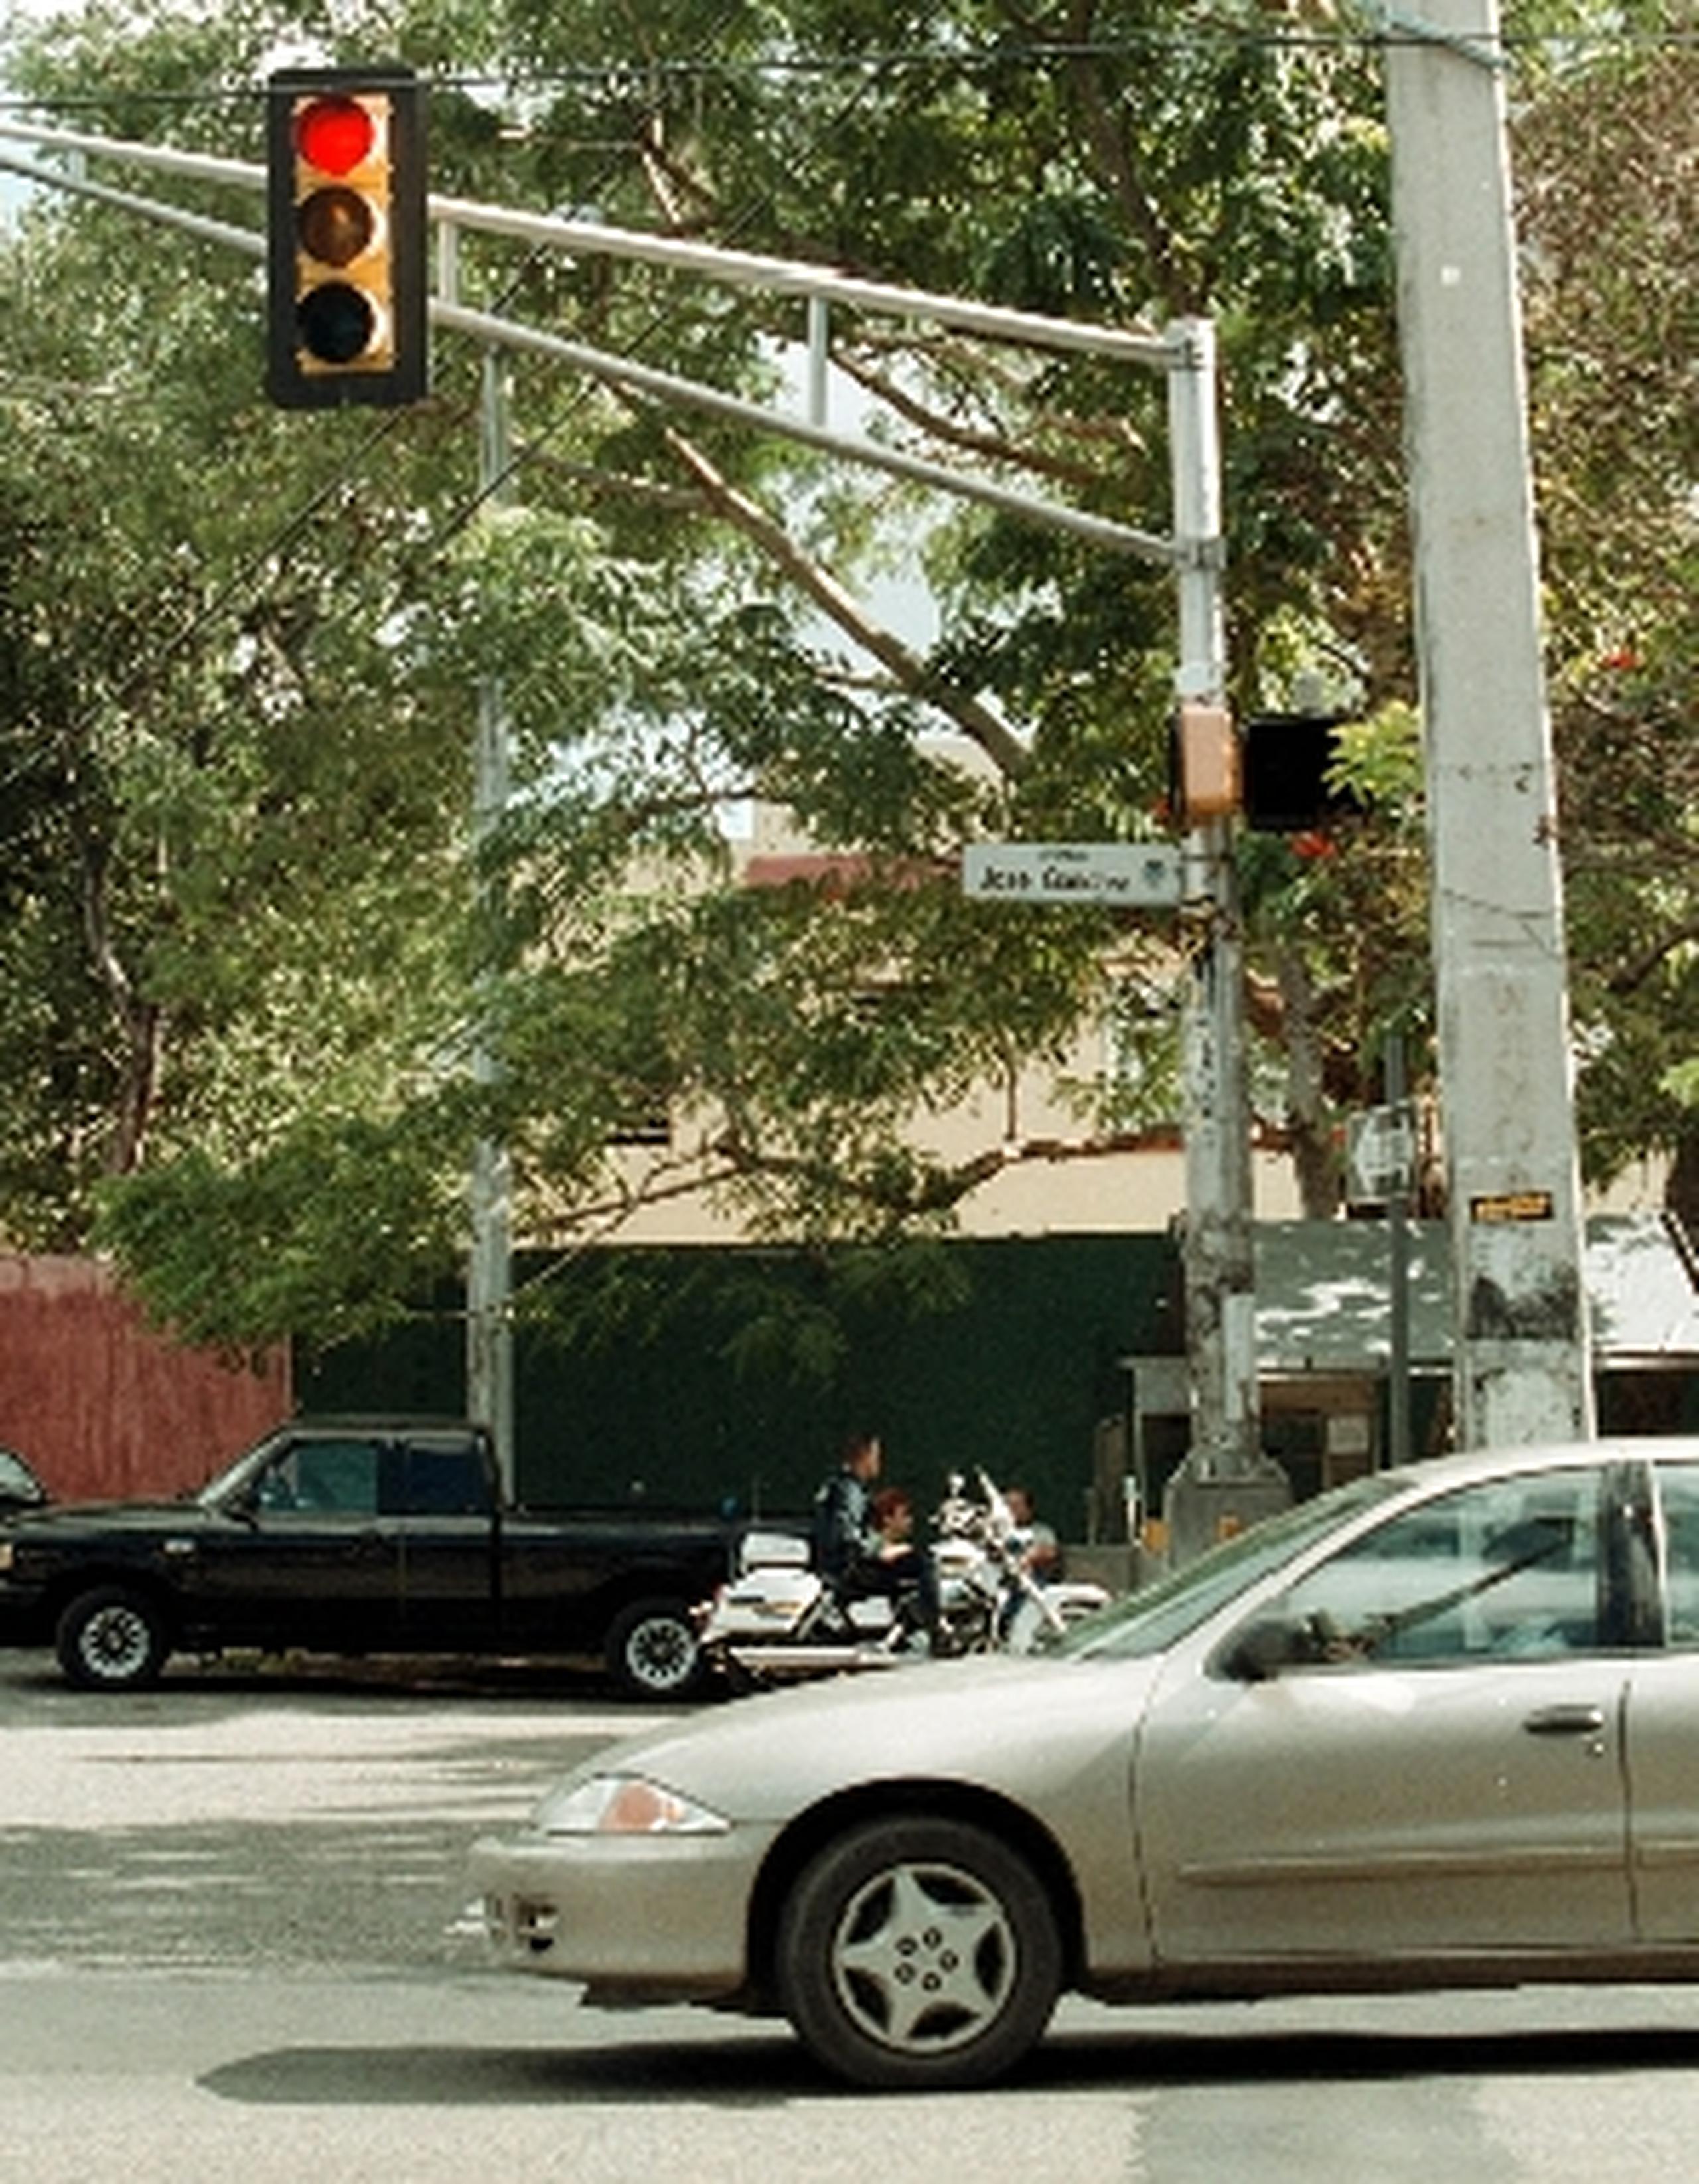 Una forma  de echarle mano a los que rebasan los semáforos con la luz roja sería captándolos con cámaras a esos fines que permitan la emisión inmediata de multas. (Archivo)